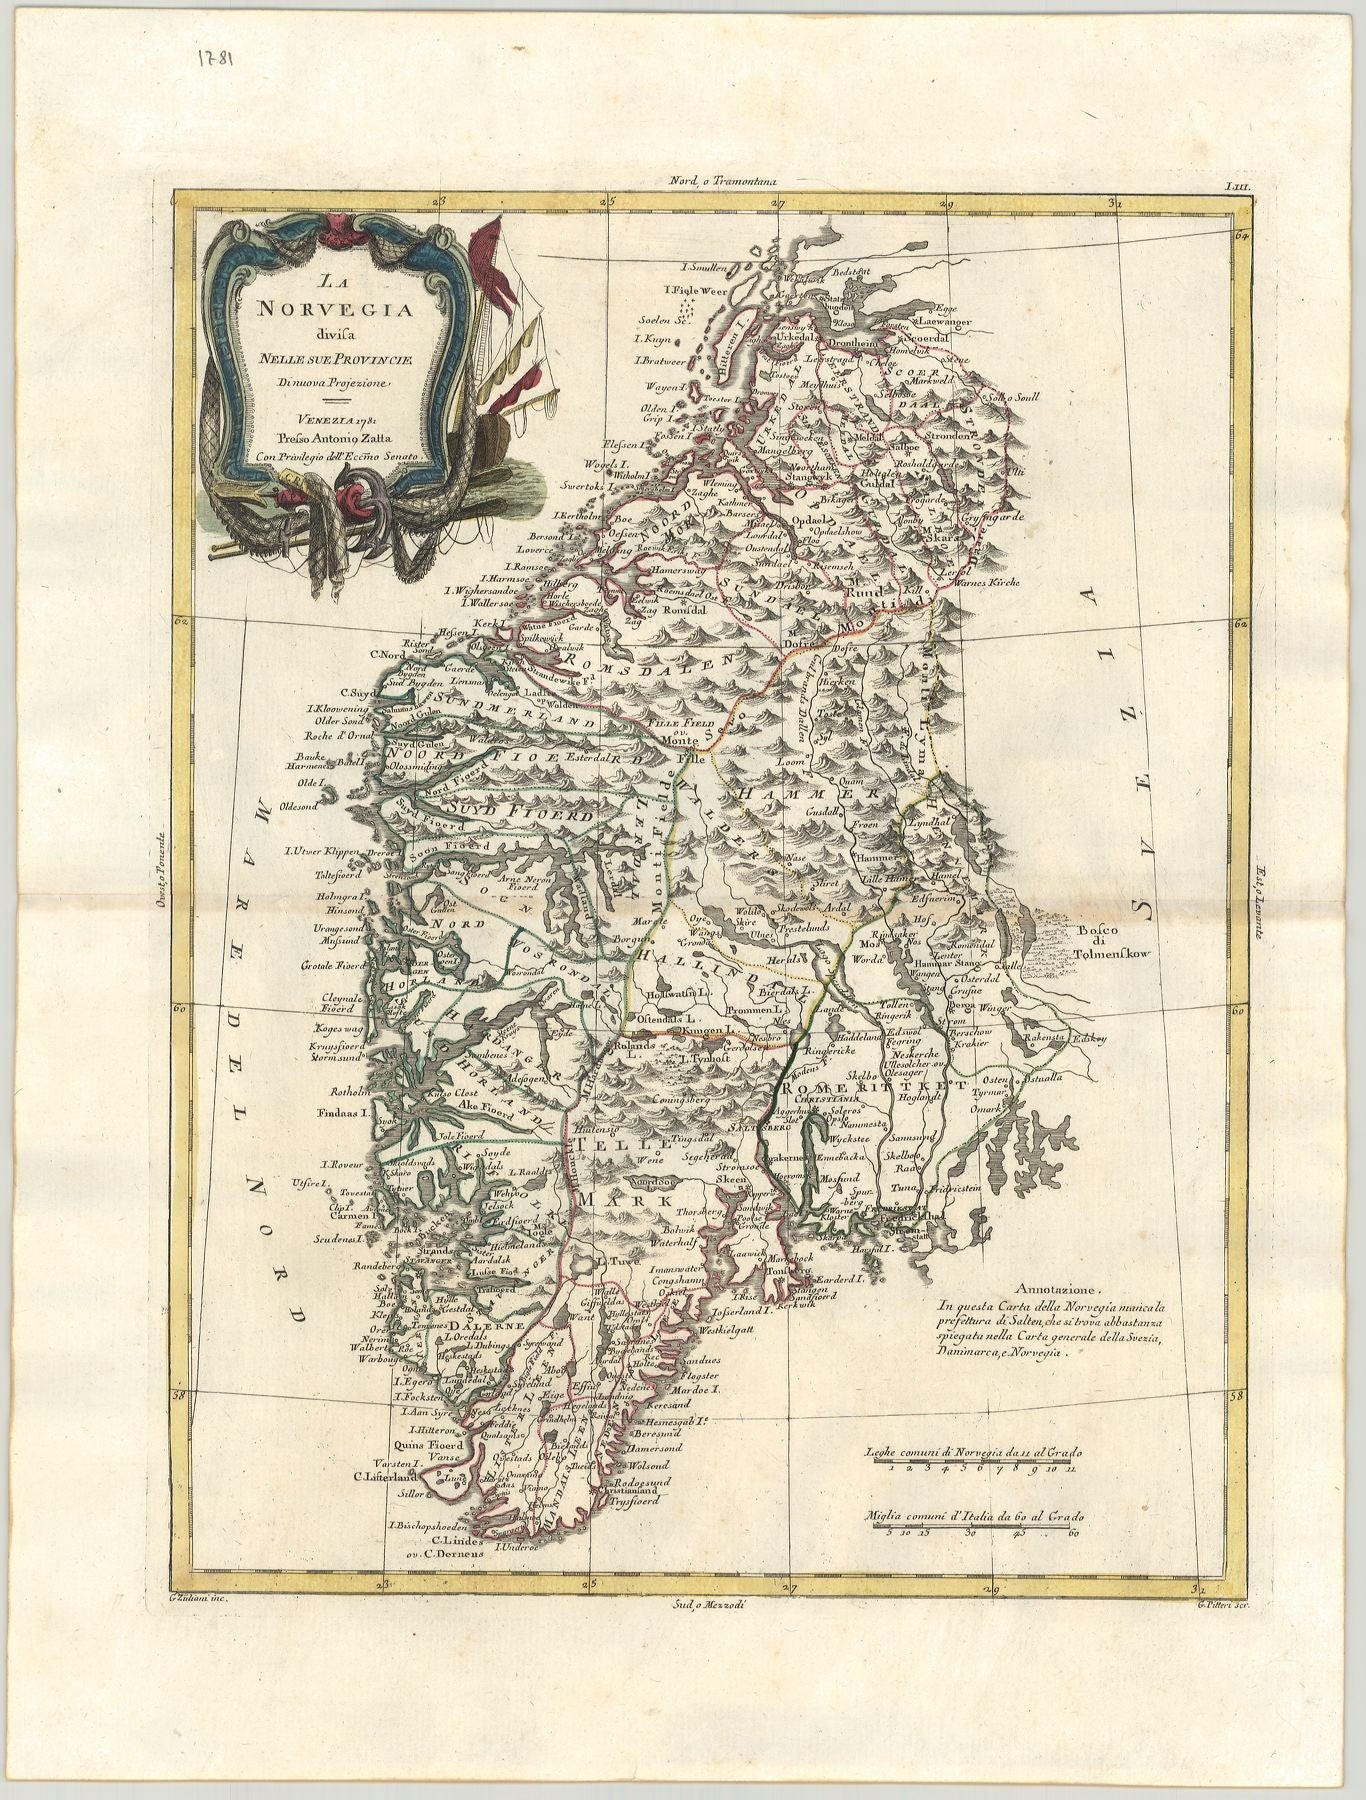 Norwegen im Jahr 1781 von Antonio Zatta